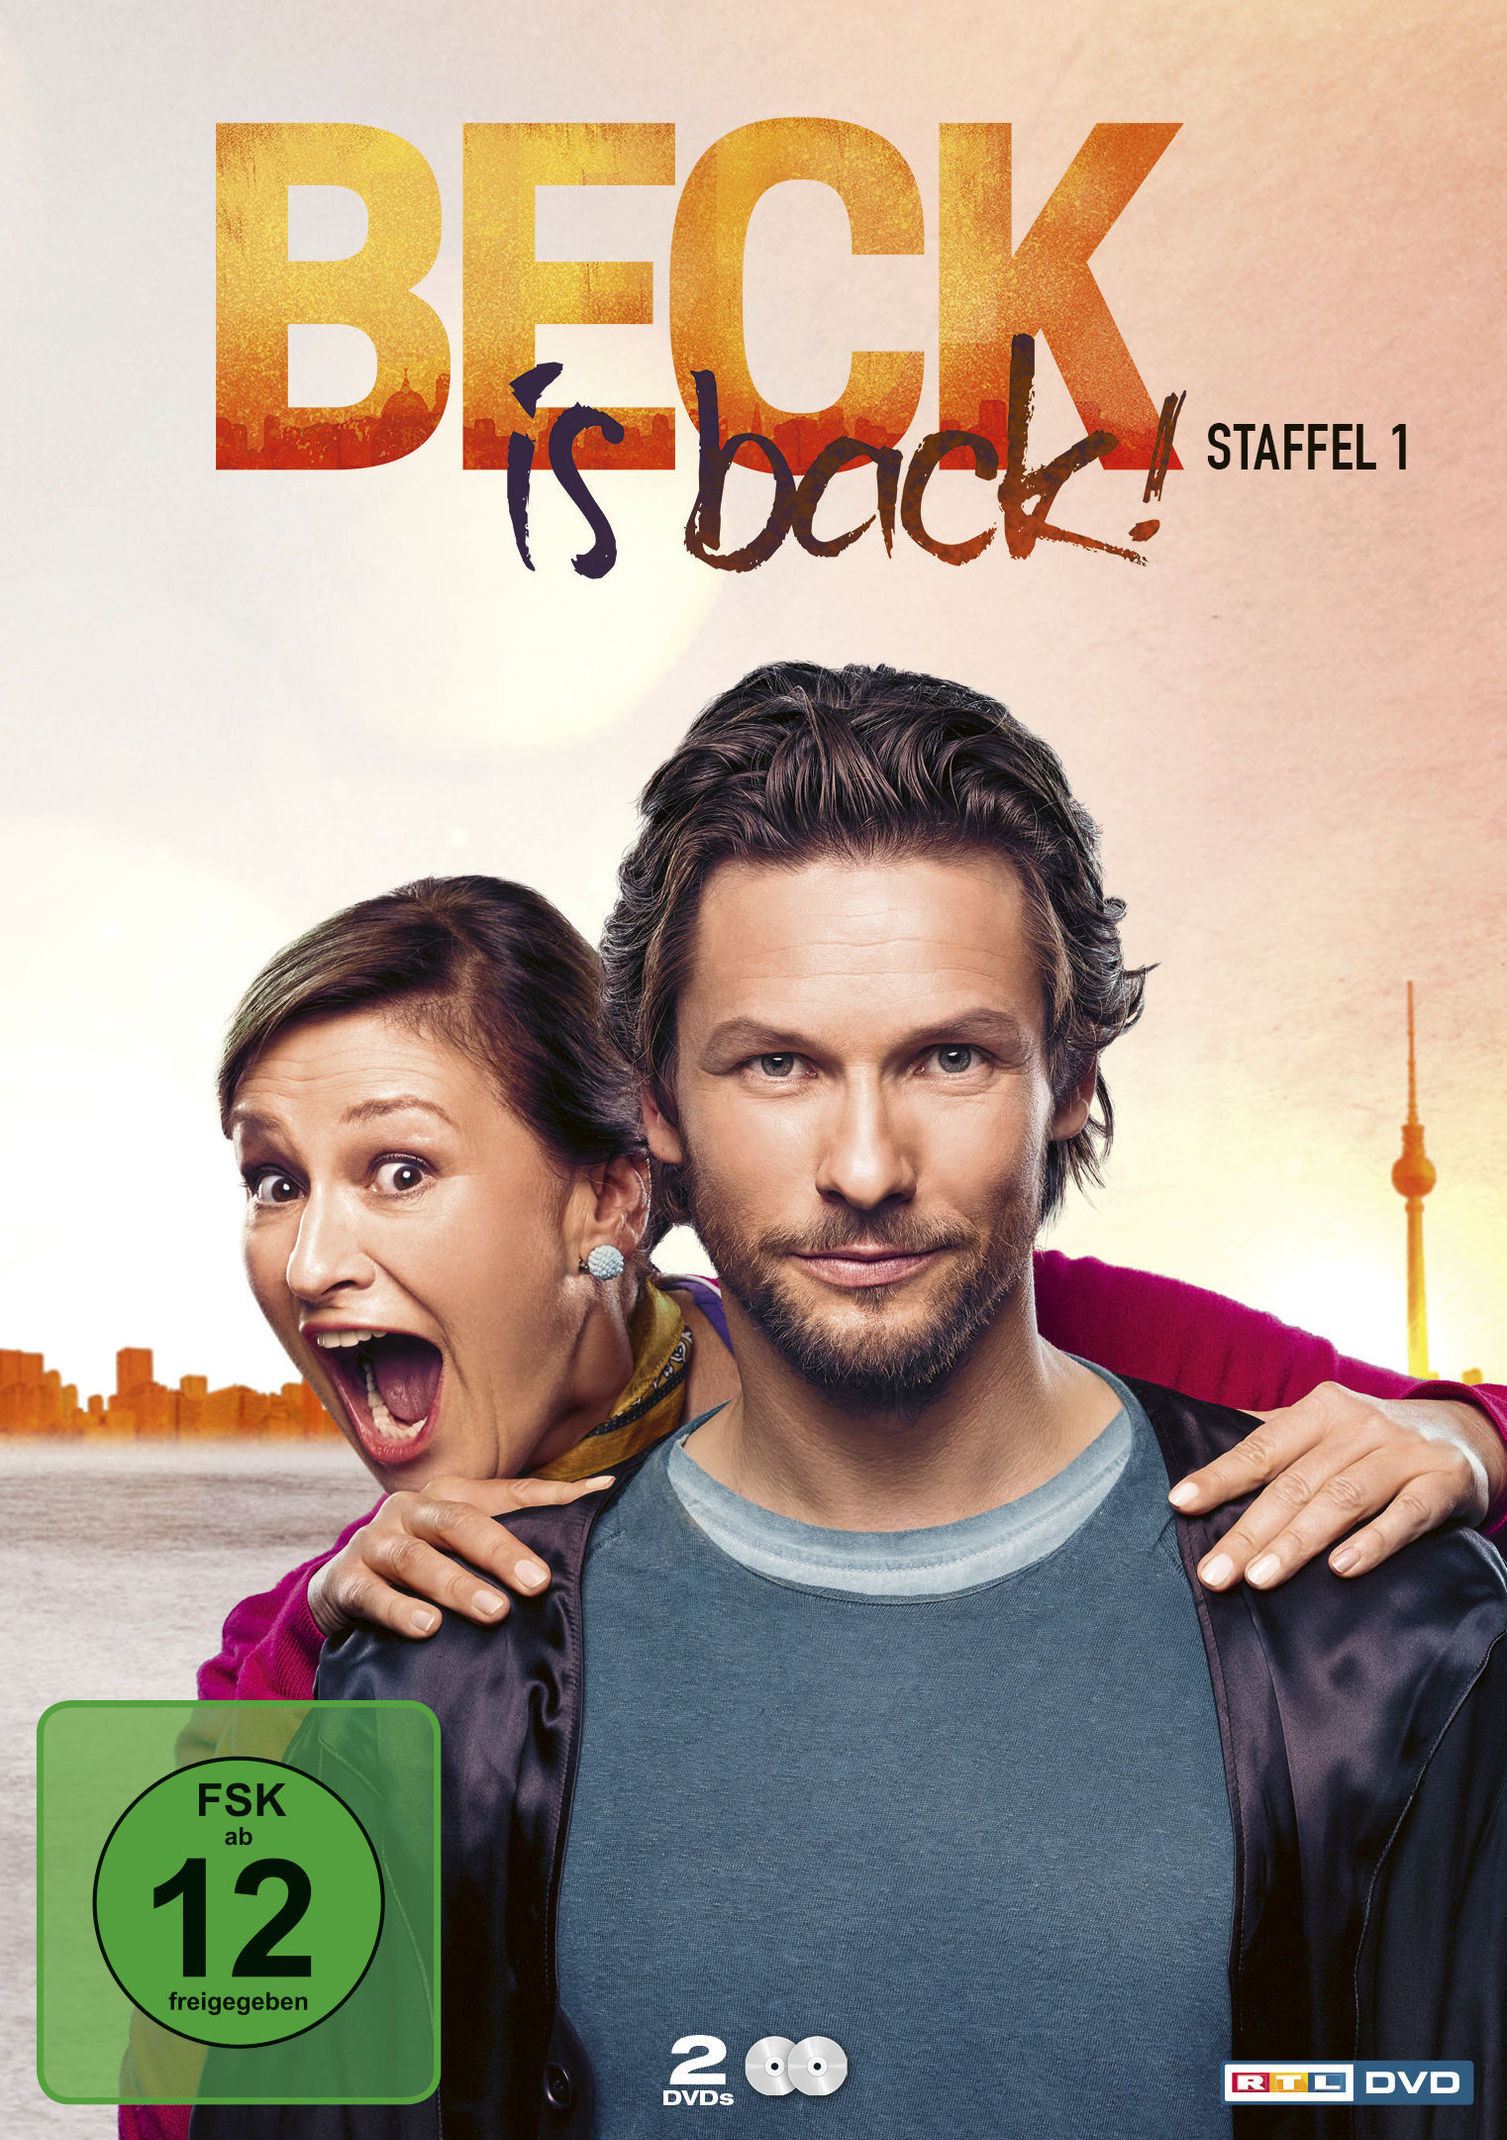 Beck is back! - Staffel 1 DVD bei Weltbild.at bestellen